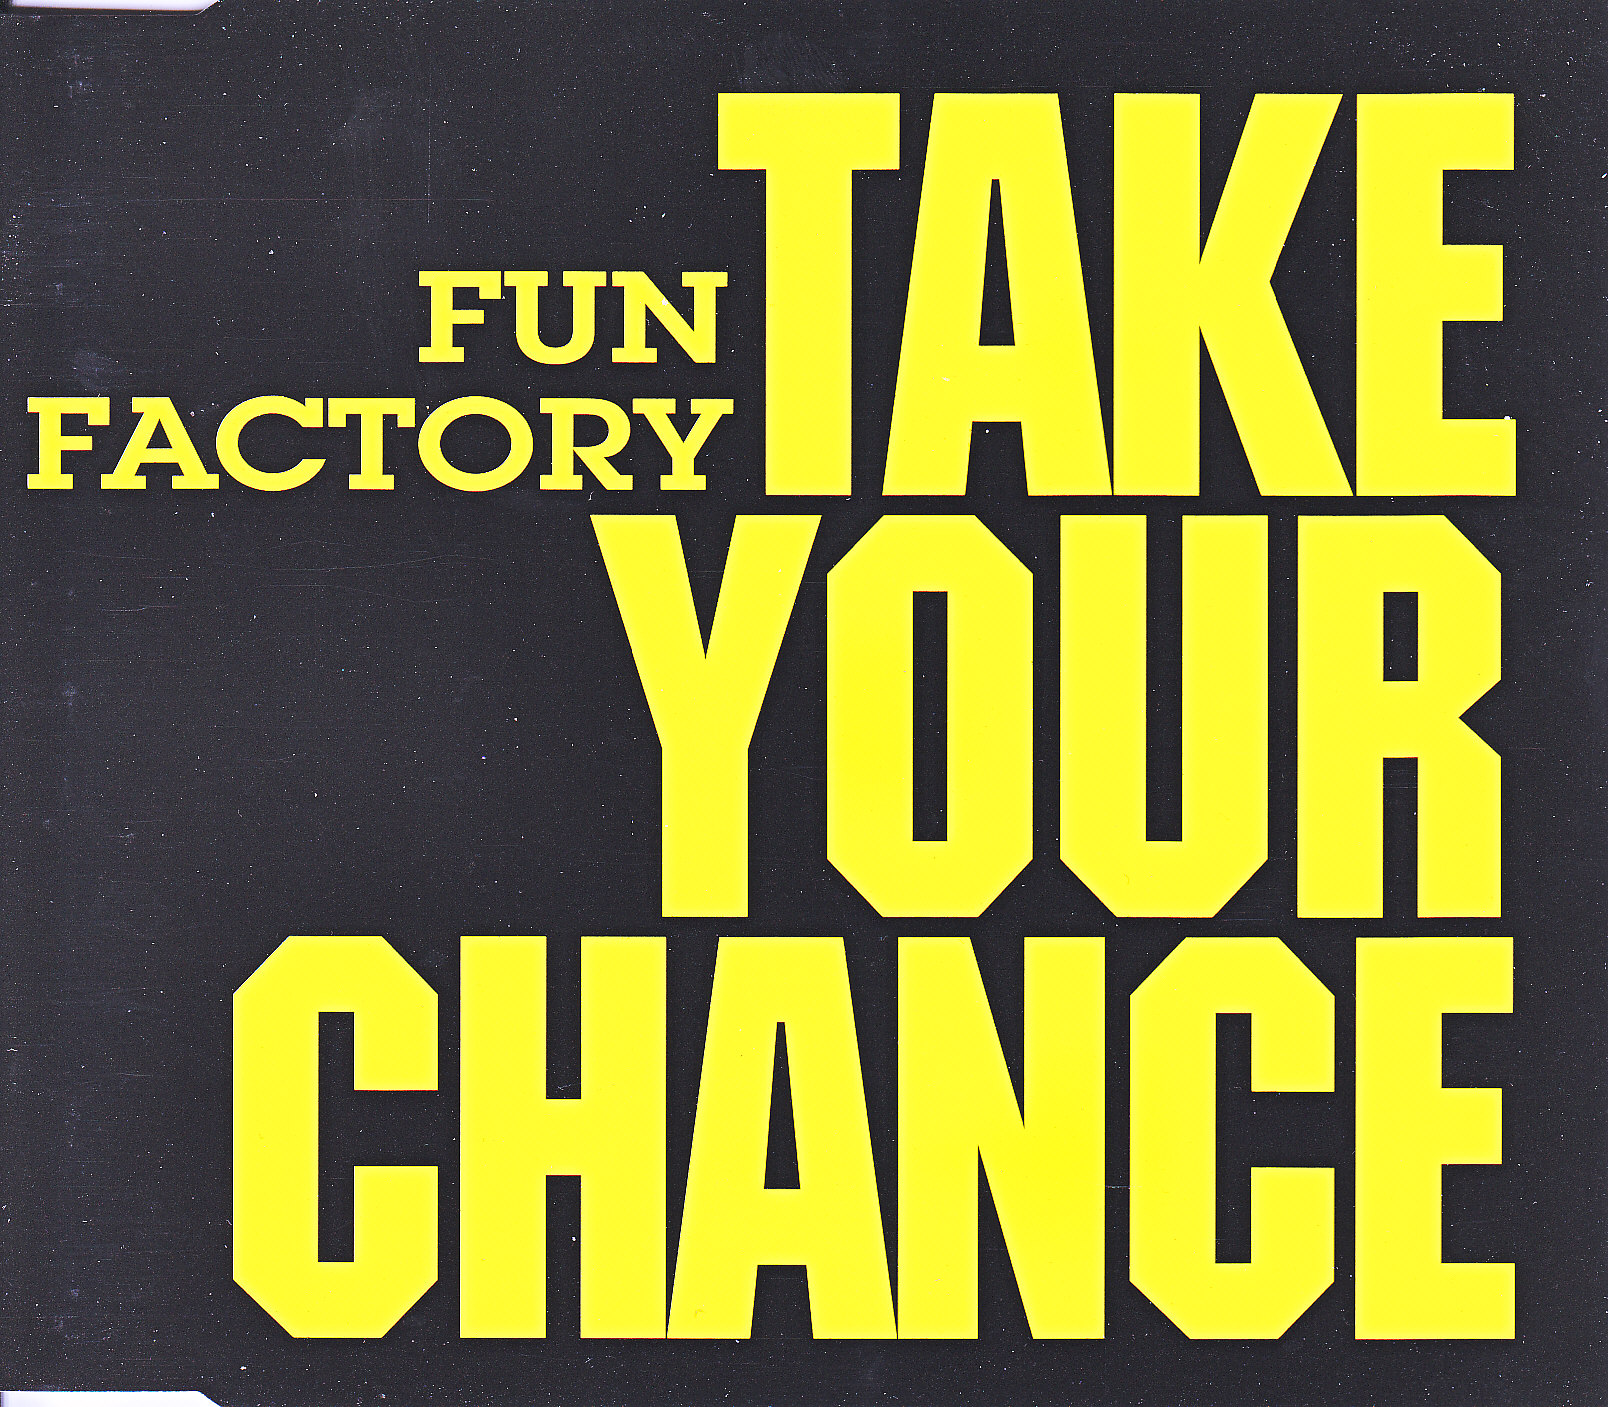 FUN FACTORY==Take a chance